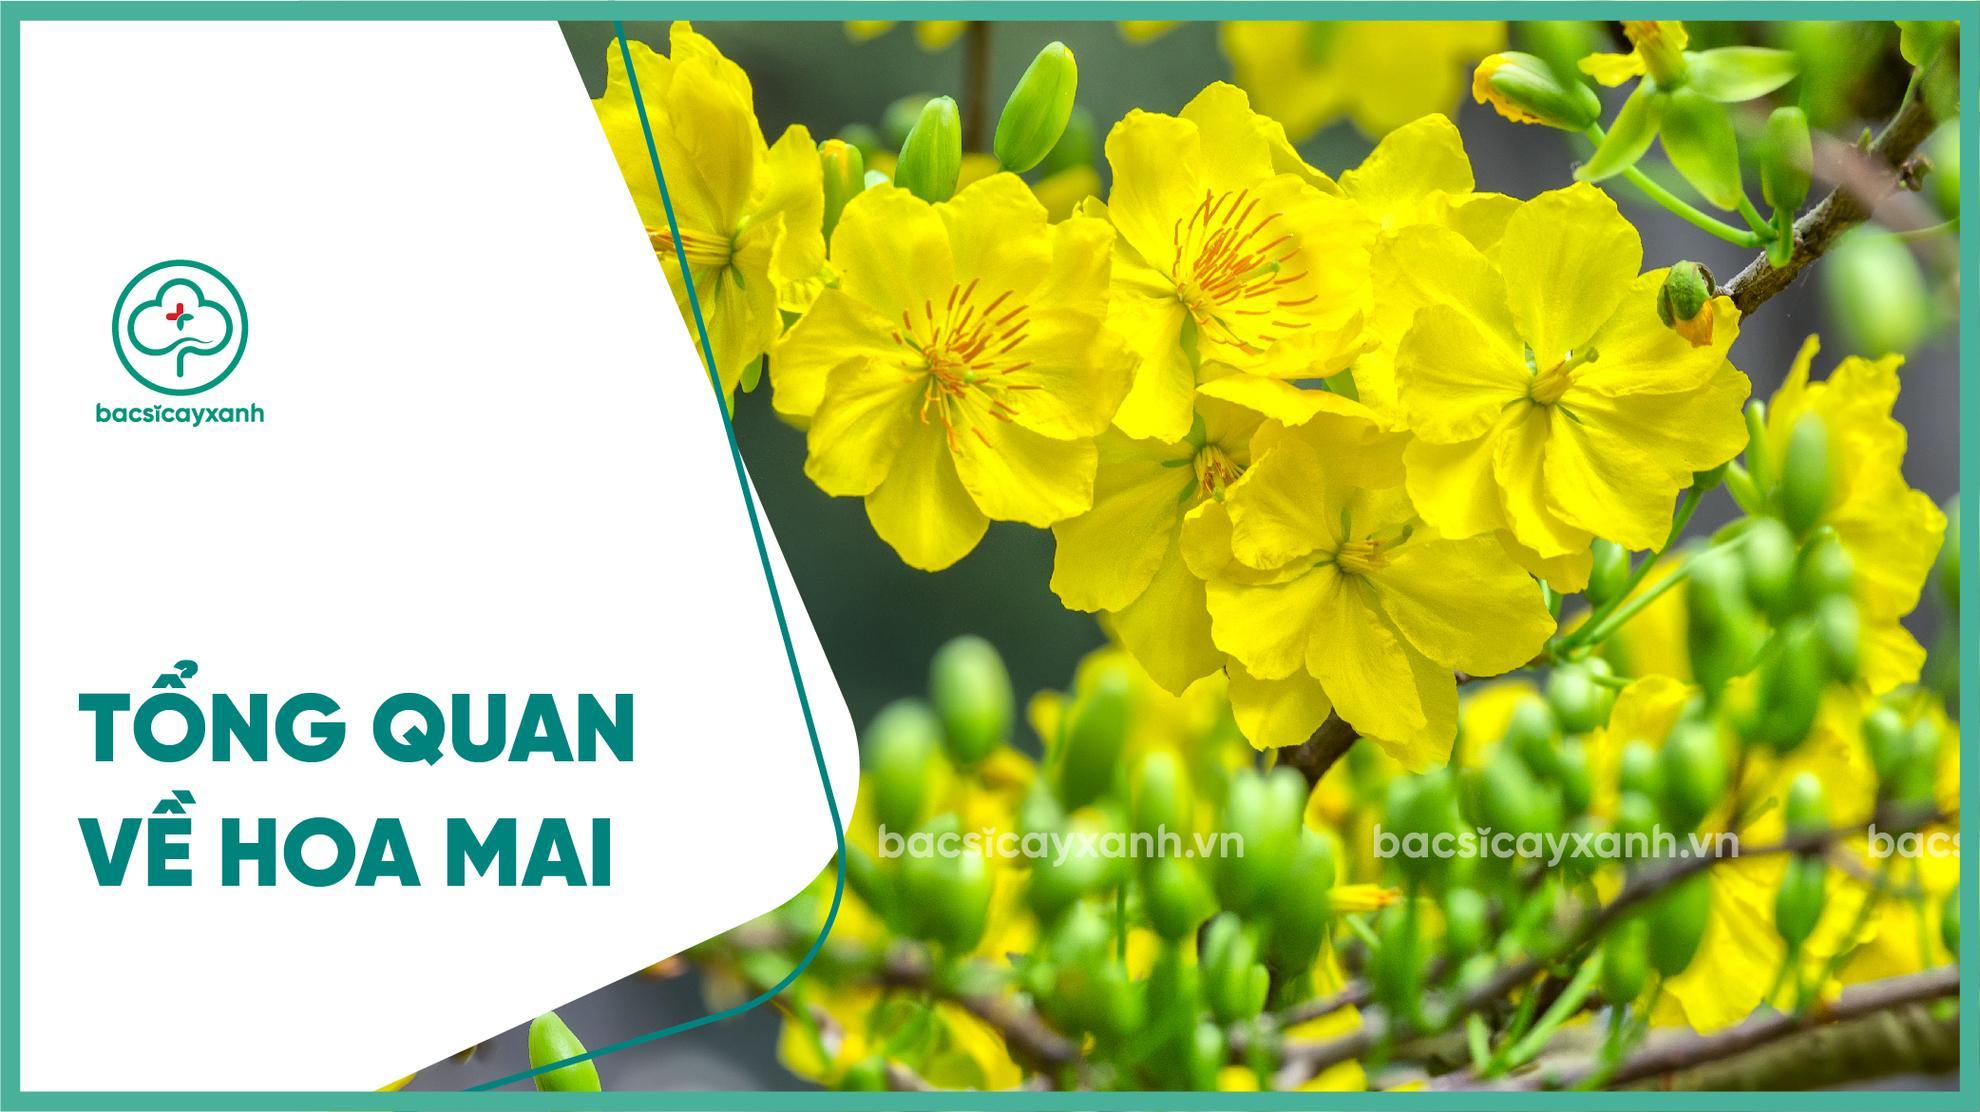 Hiệu quả kinh tế hoa mai không chỉ đơn thuần nằm ở việc tạo ra nguồn thu nhập cho bà con trong mùa Tết, mà còn ở việc trở thành loại hoa xuất khẩu quan trọng của Việt Nam. Cùng ngắm nhìn những khoảnh khắc hoa mai thắm tươi và ngọt ngào trên đất nước ta.